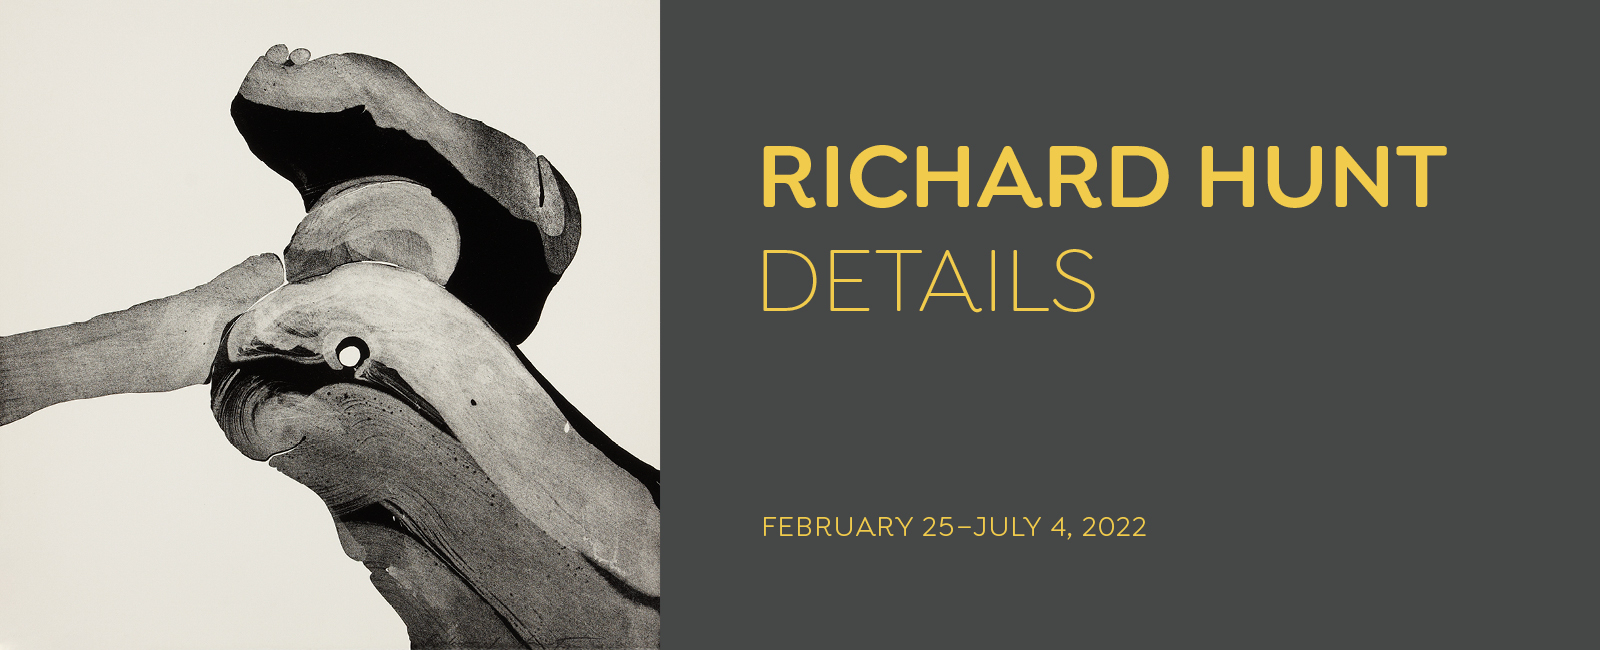 Richard Hunt Details